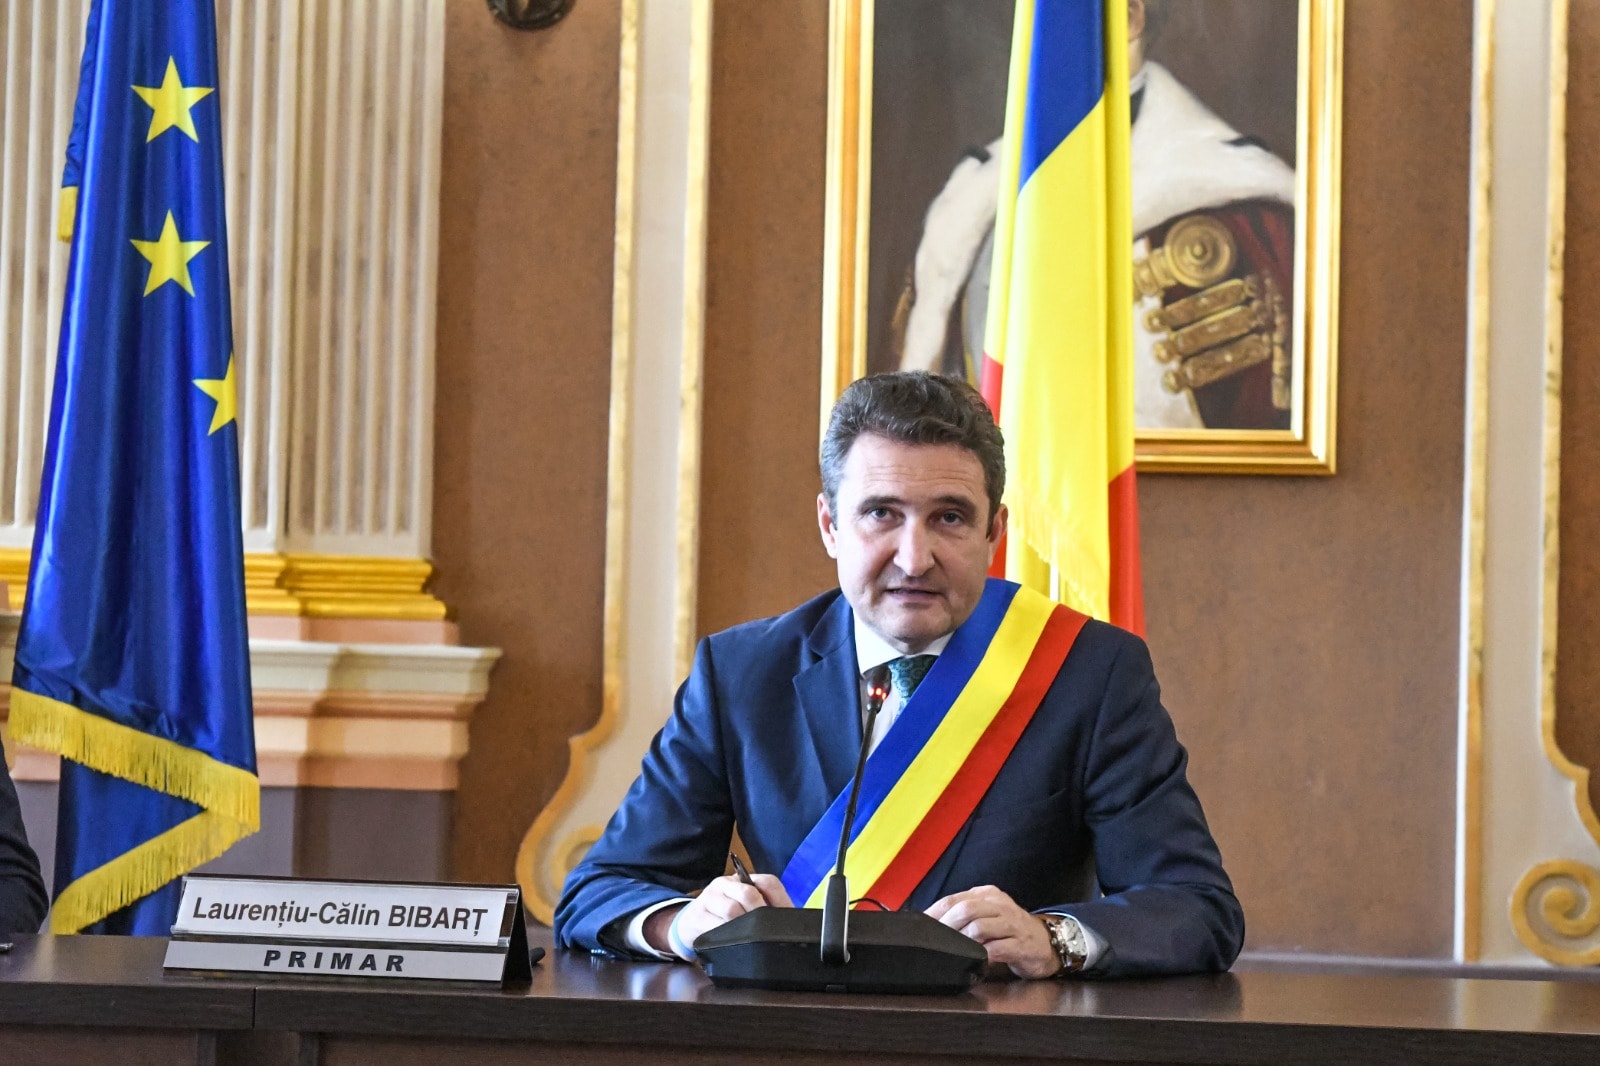 Primarul Călin Bibarț - Primăria Arad a câştigat 9,7 milioane euro prin PNRR pentru învățământul arădean